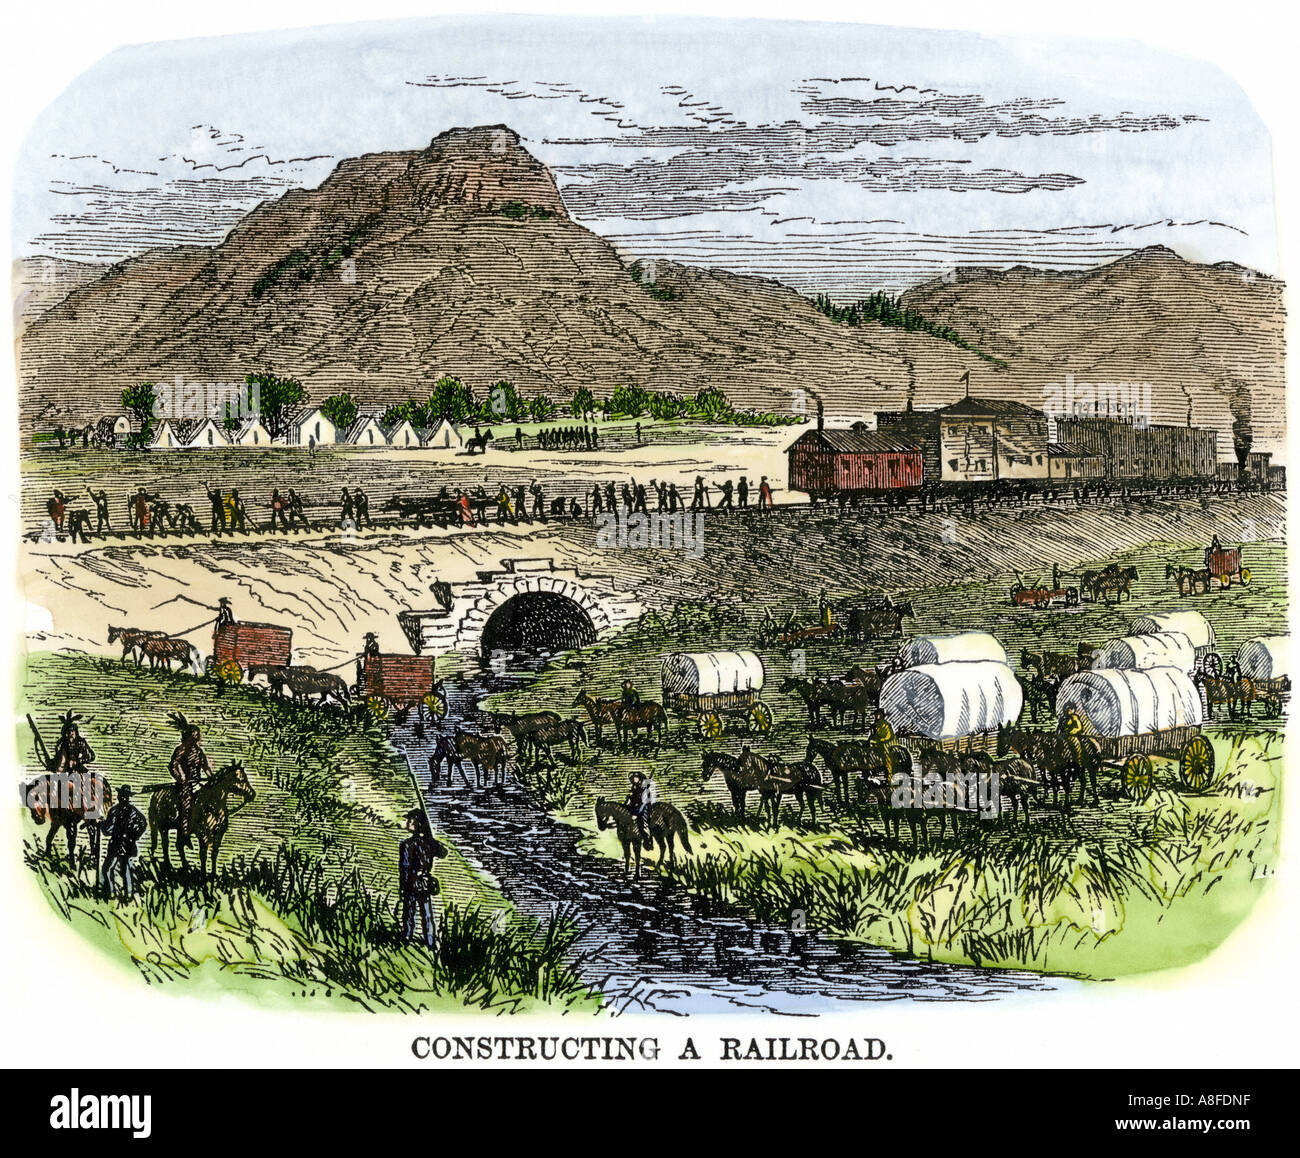 Les travailleurs du chemin de fer transcontinental et la construction d'un camp sur l'ouest des années 1800. À la main, gravure sur bois Banque D'Images